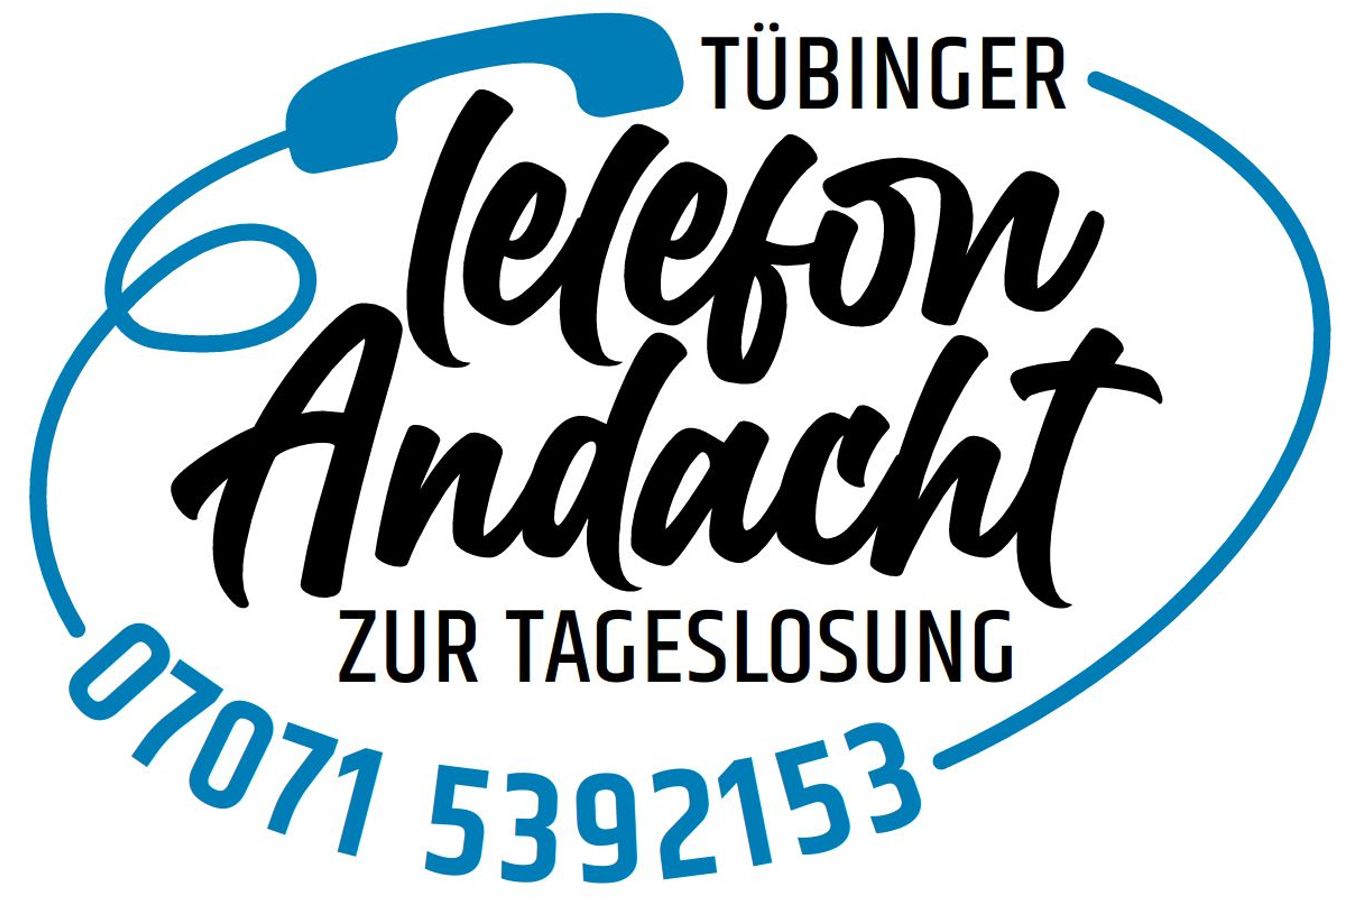 Tübinger Telefonandacht zur Tageslosung